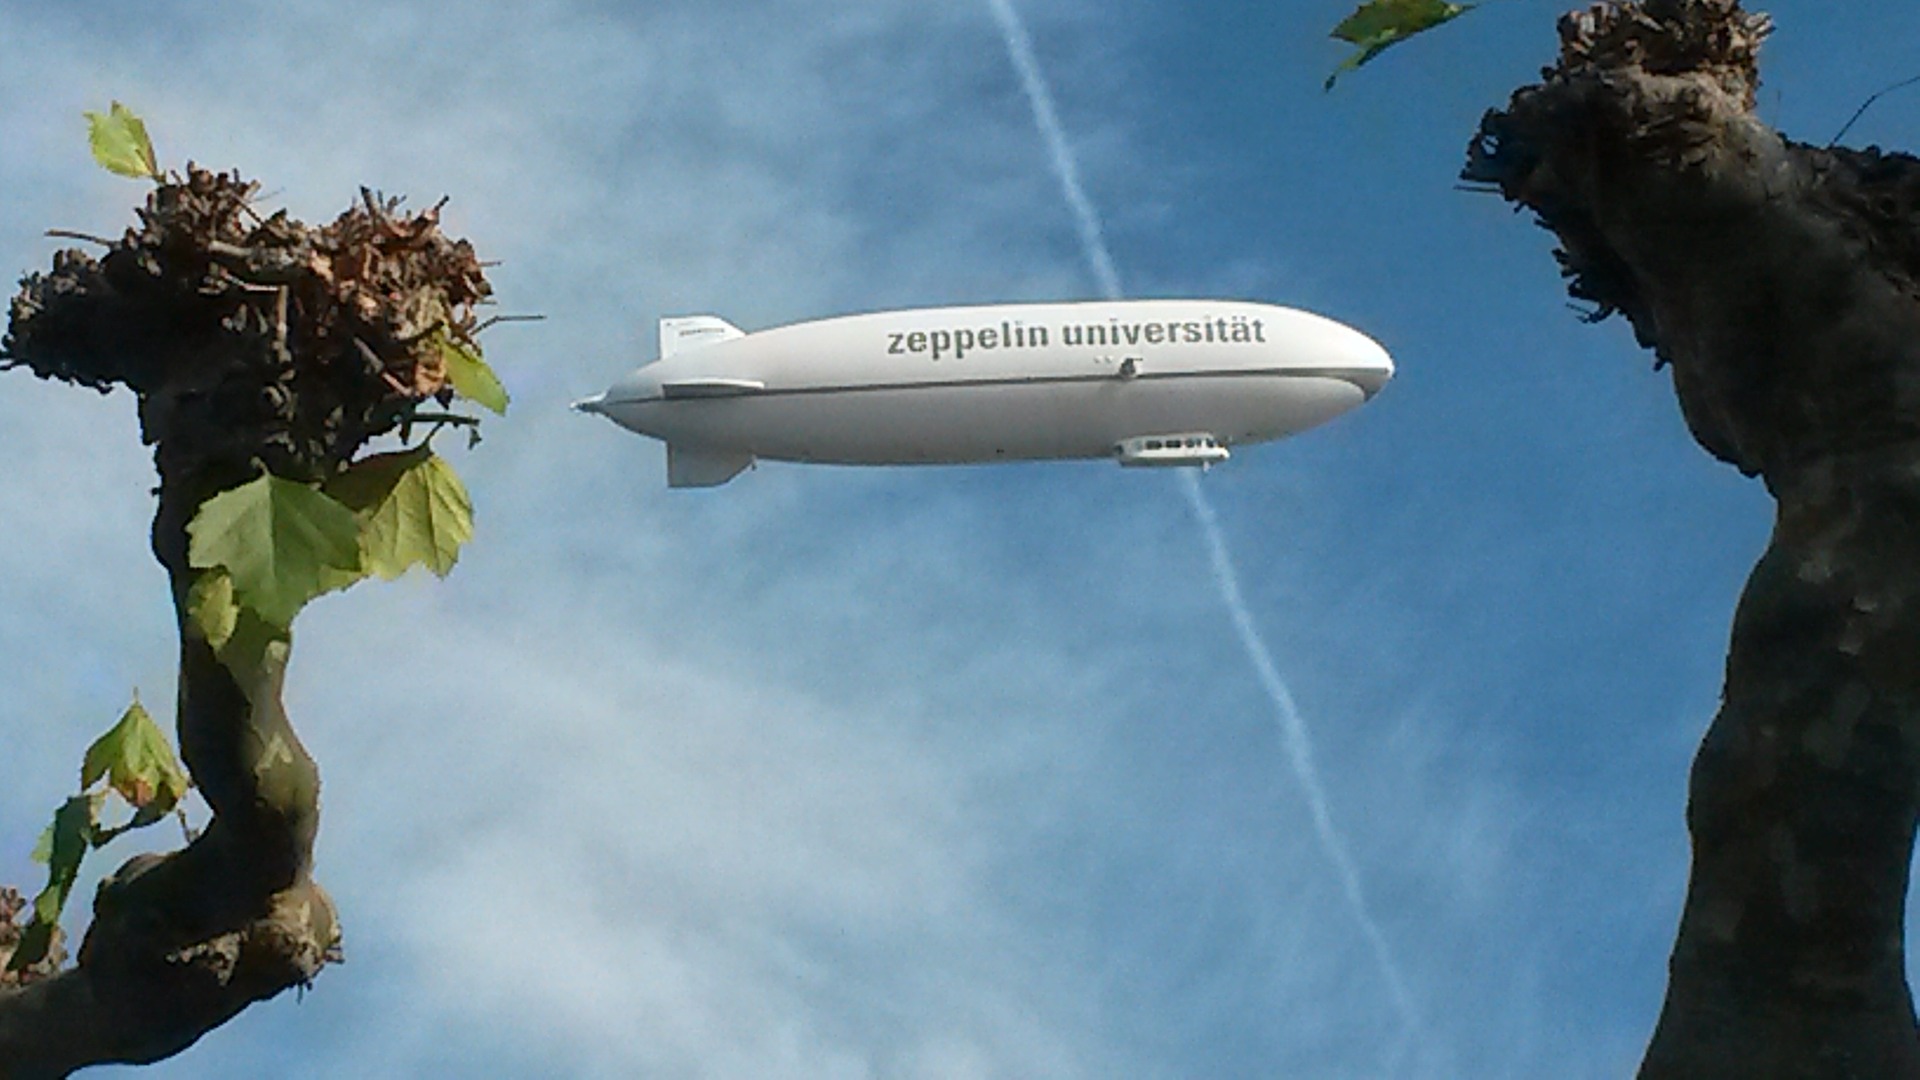 Zeppelin Luftschiff, Friedrichshafen, Bodensee